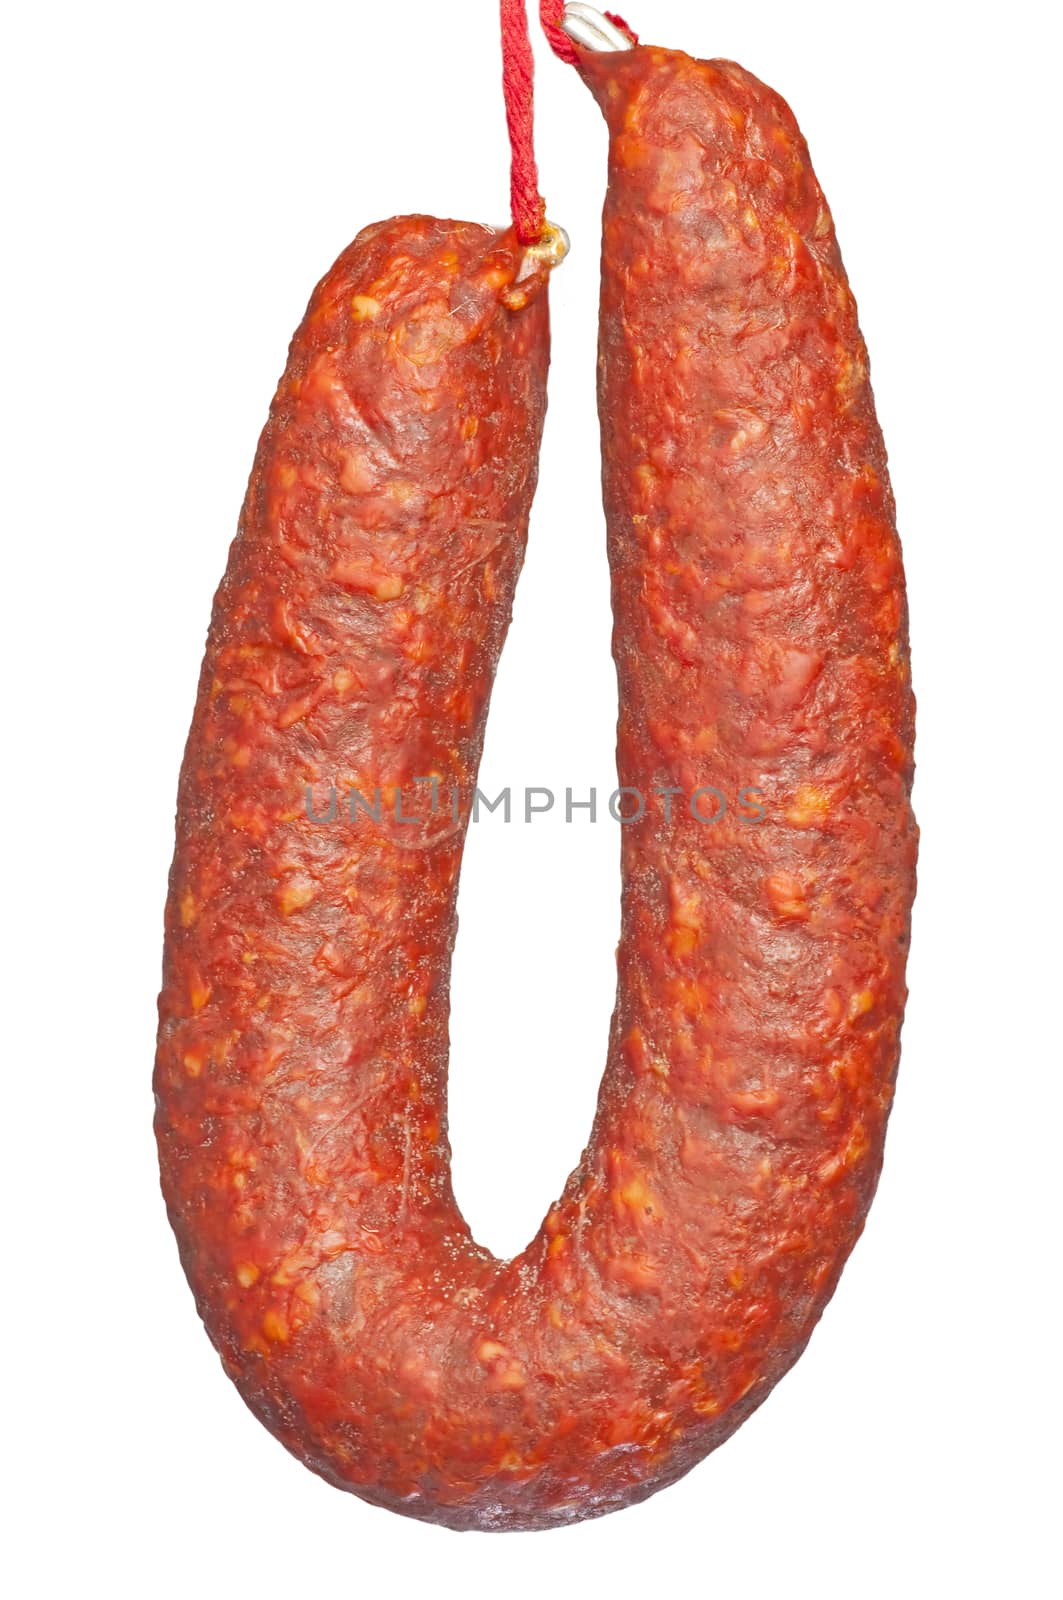 chorizo sausage by Jochen